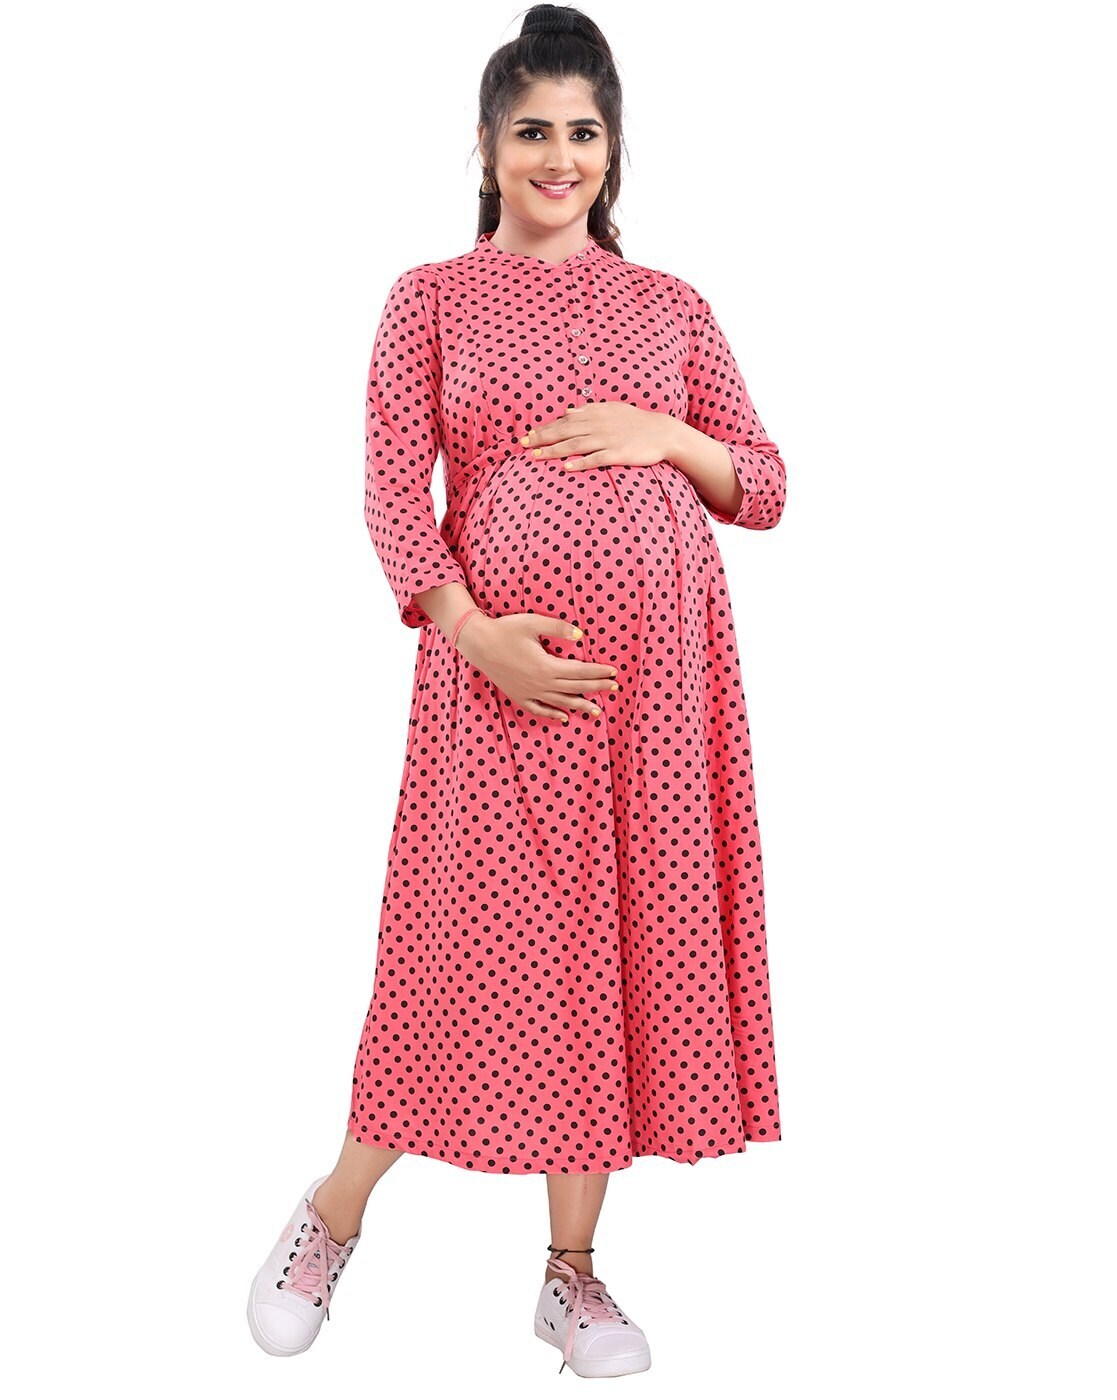 Maternity dress haul👗|| flipkart online shopping haul || flipkart haul -  YouTube